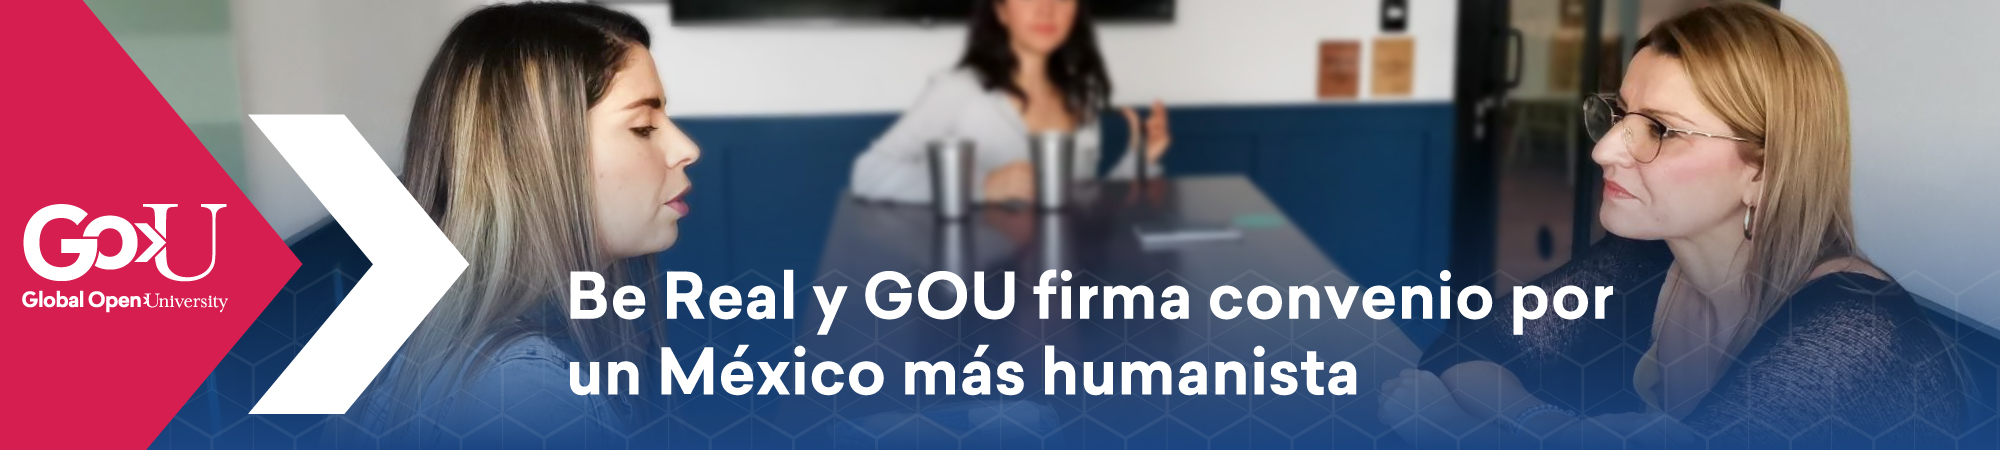 Be Real y GOU firma convenio por un México más humanista